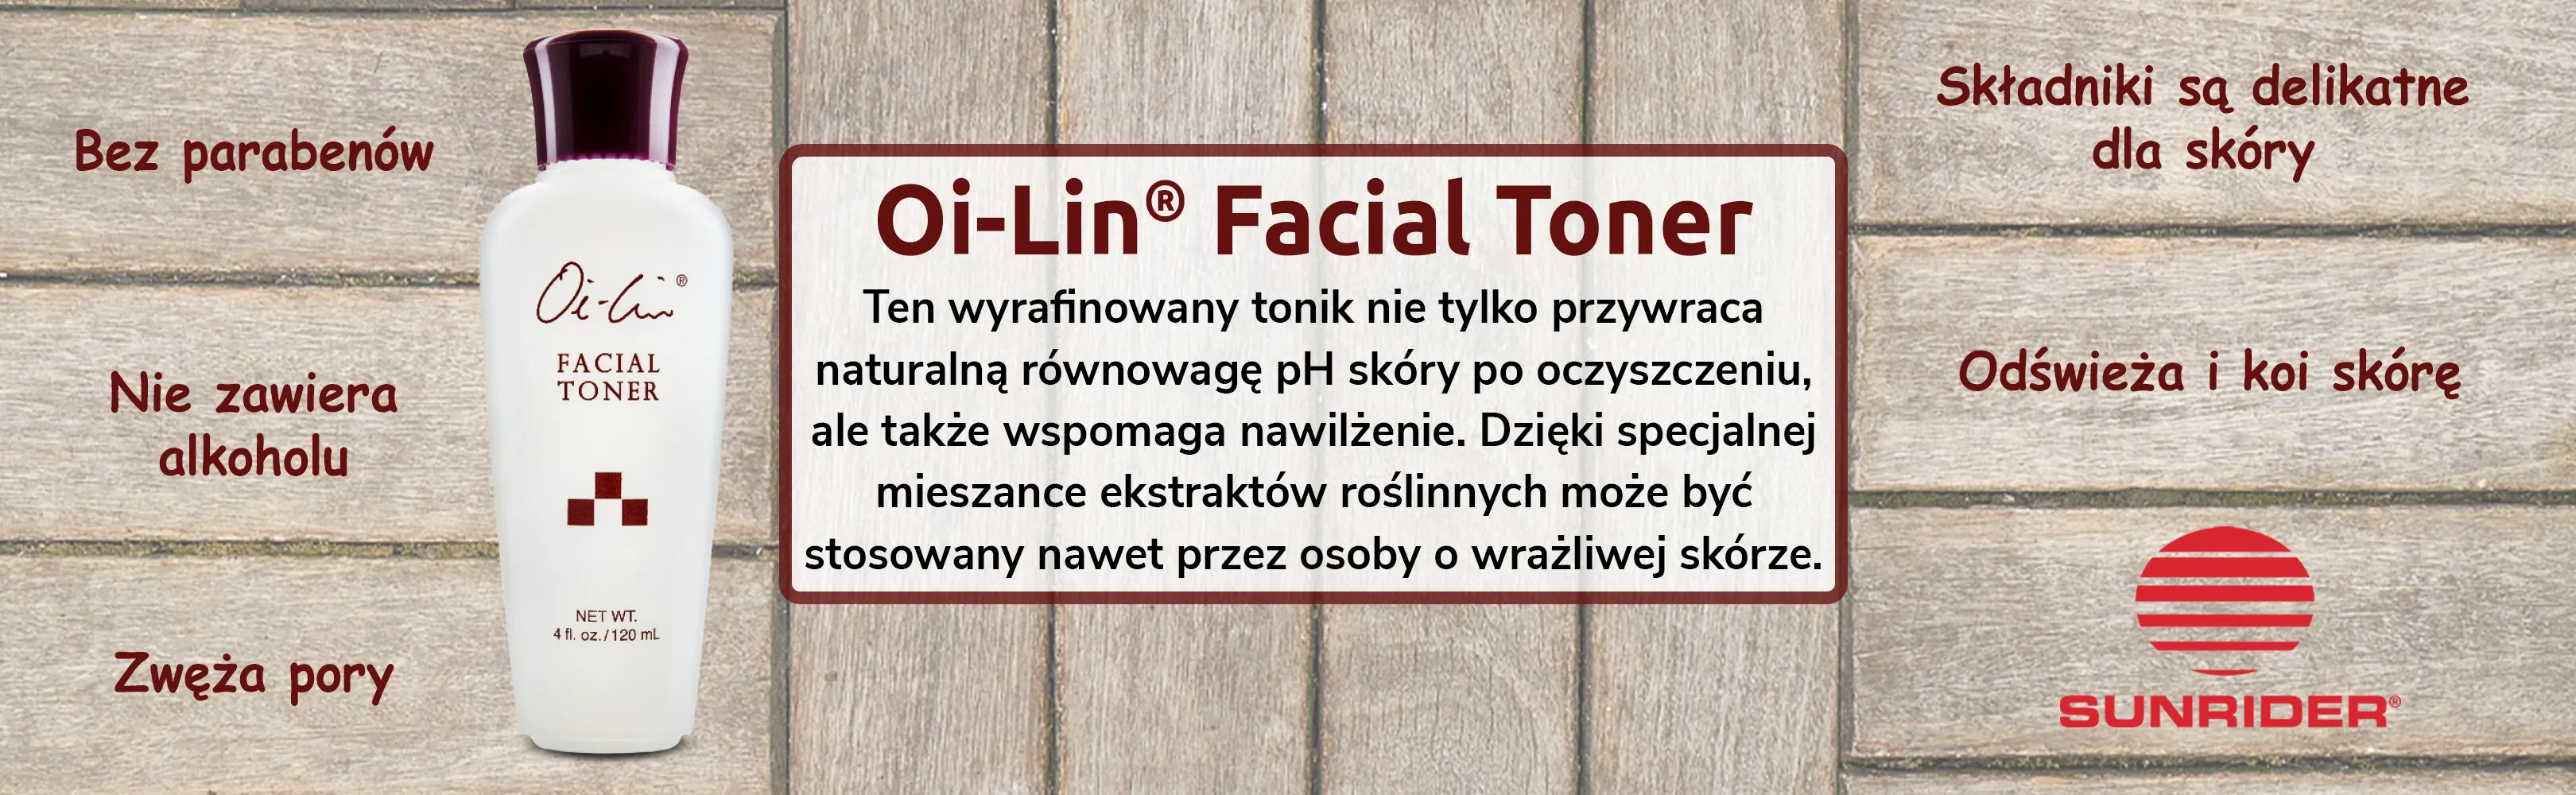 HU] Facial Toner banner PL